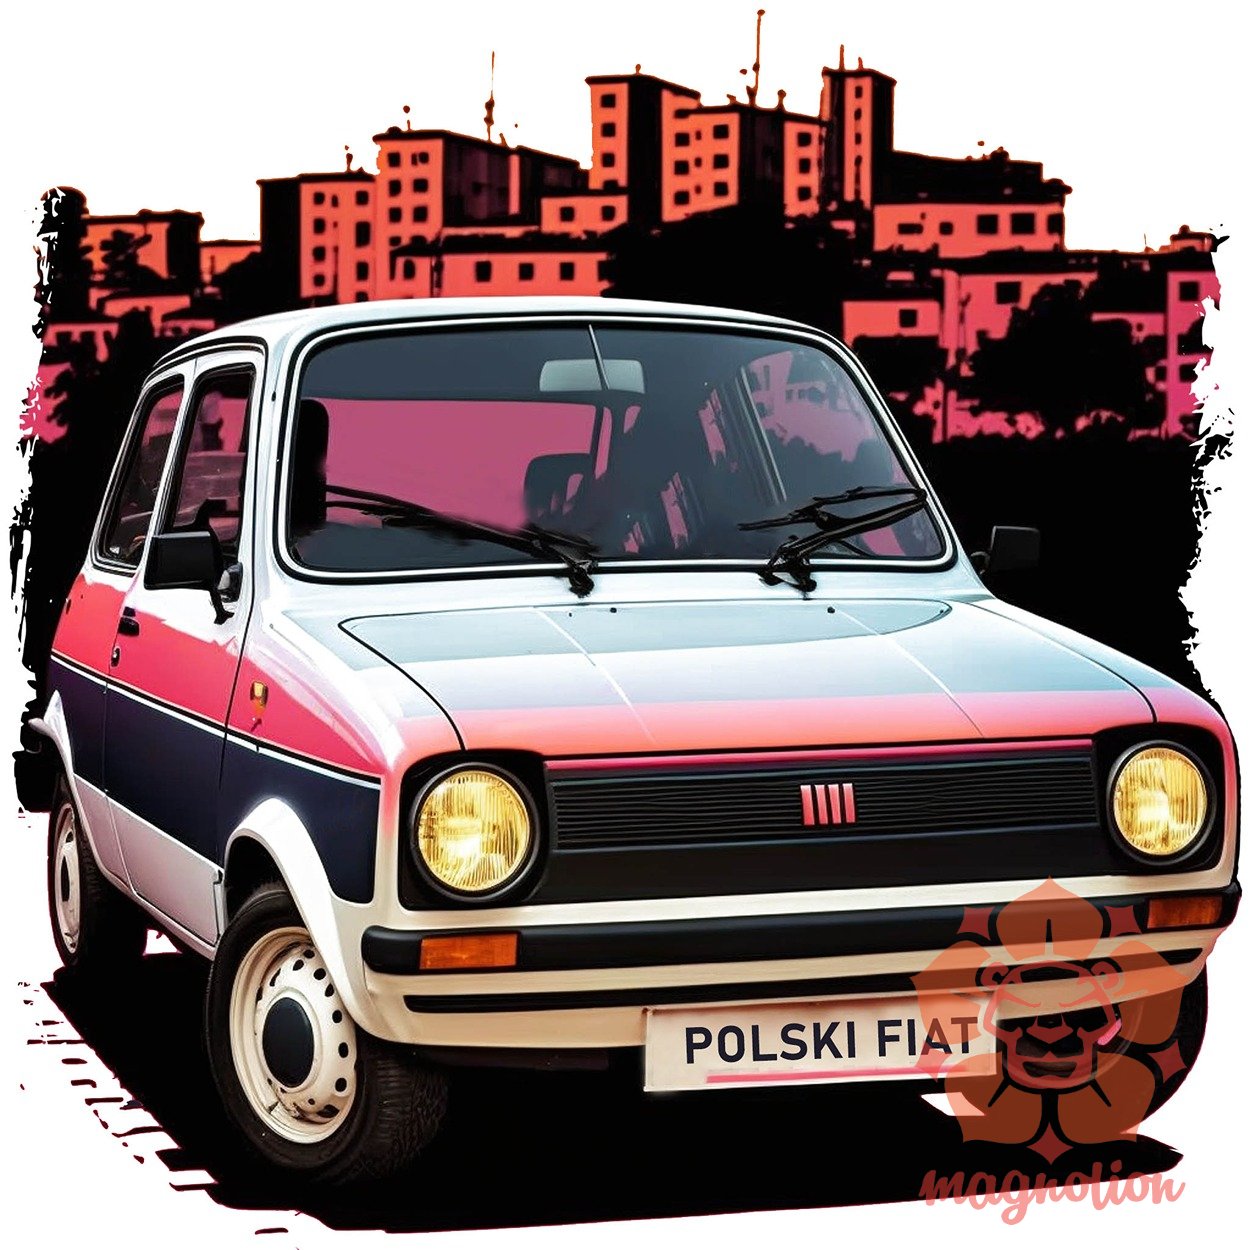 Polski Fiat v1